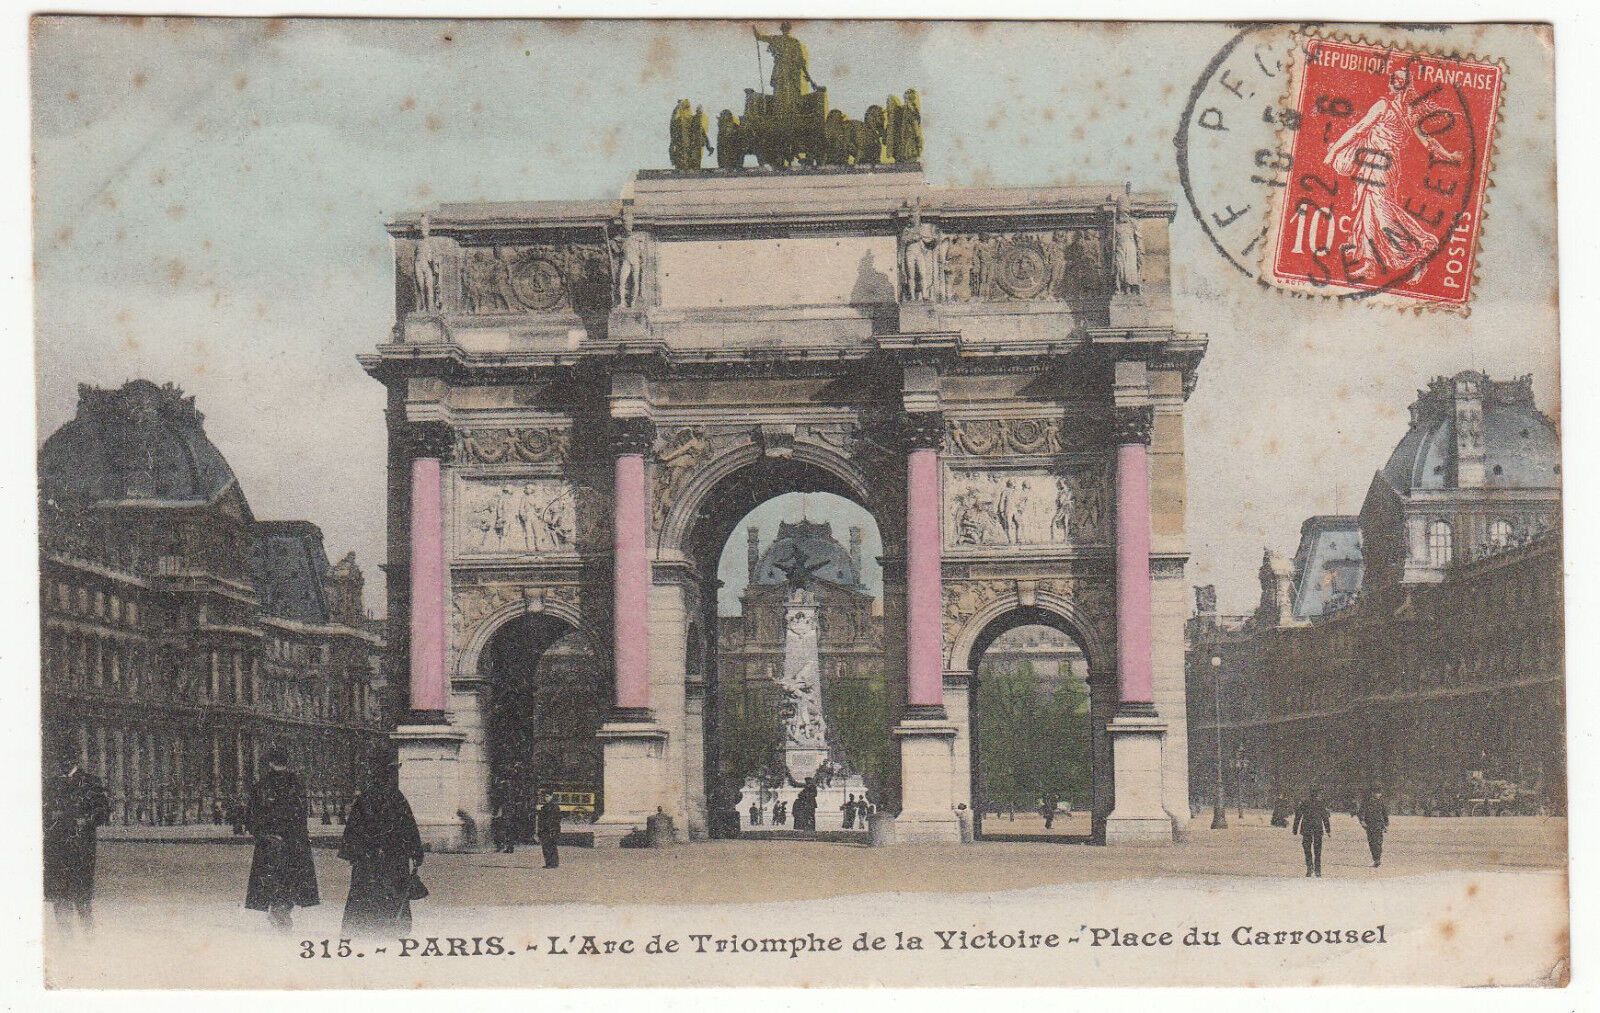 CARTE POSTALE PARIS L ARC DE TRIOMPHE DE LA VICTOIRE PLACE DU CARROUSEL 122198644925